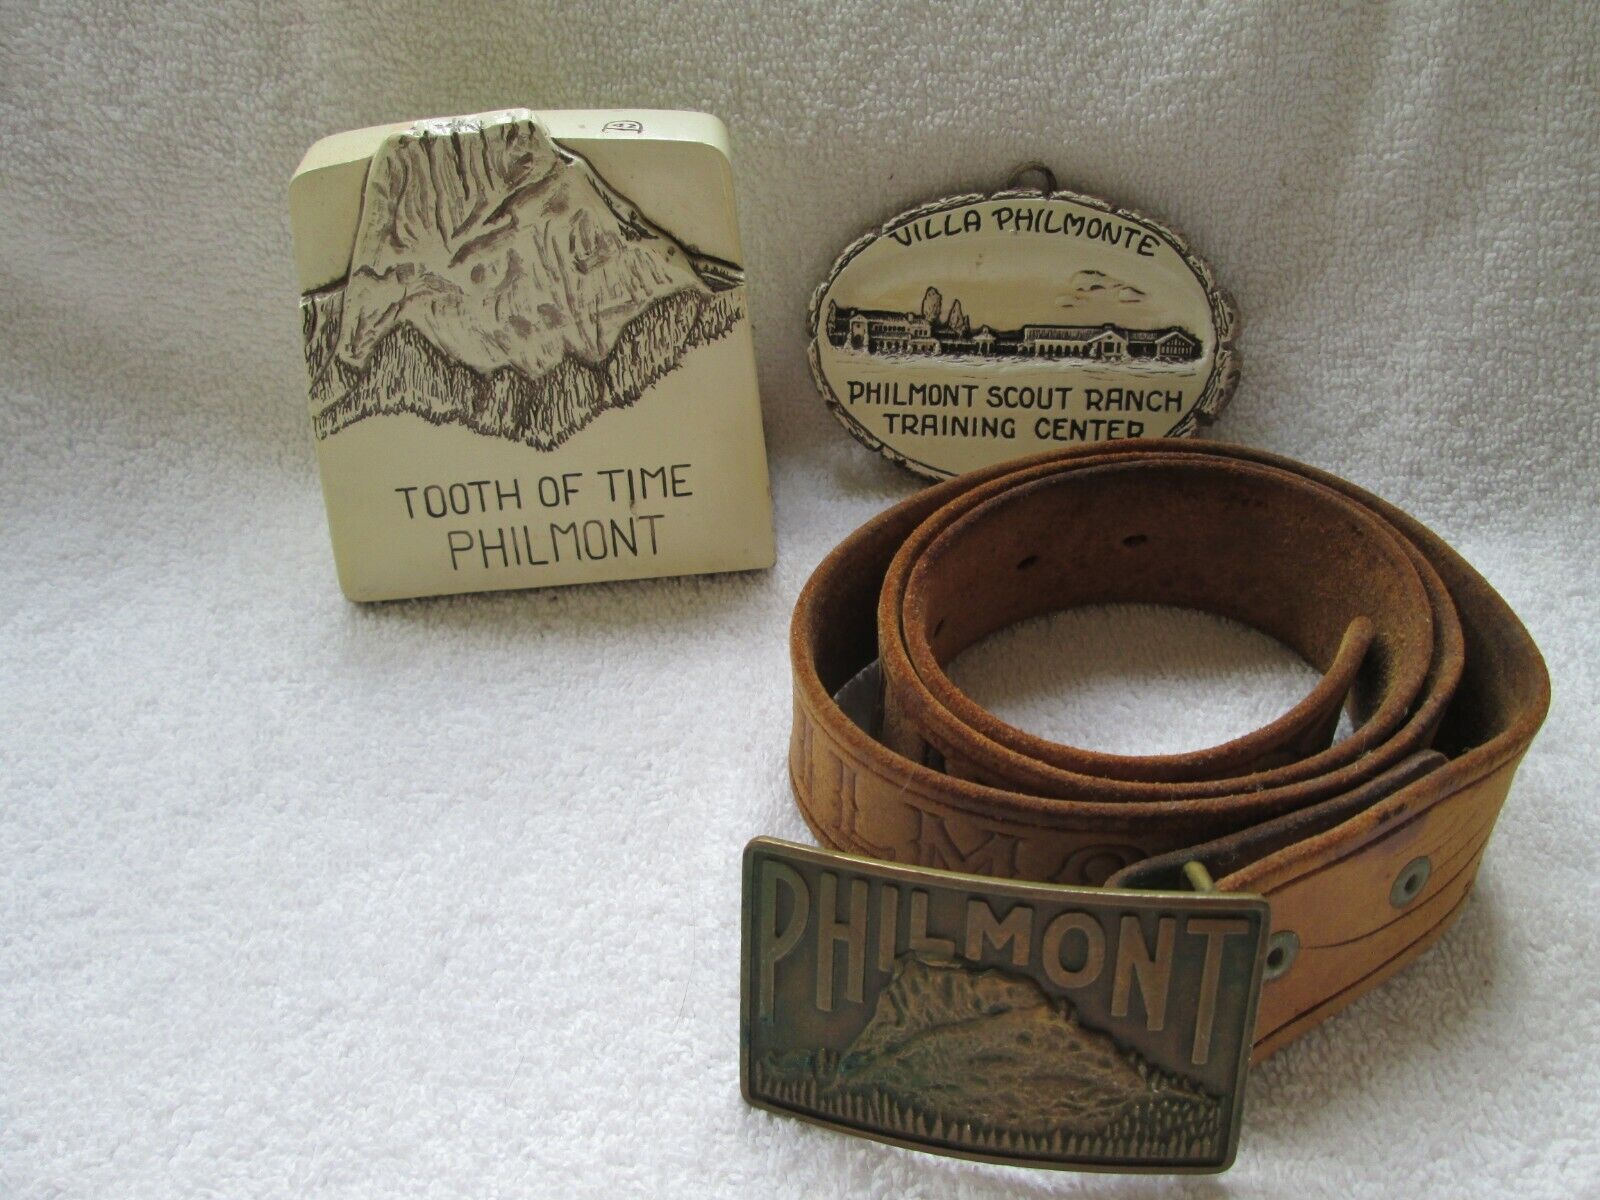 Philmont belt & buckle, Cimarron, N.Mexico, Philmont scout ranch, tooth/Philmont